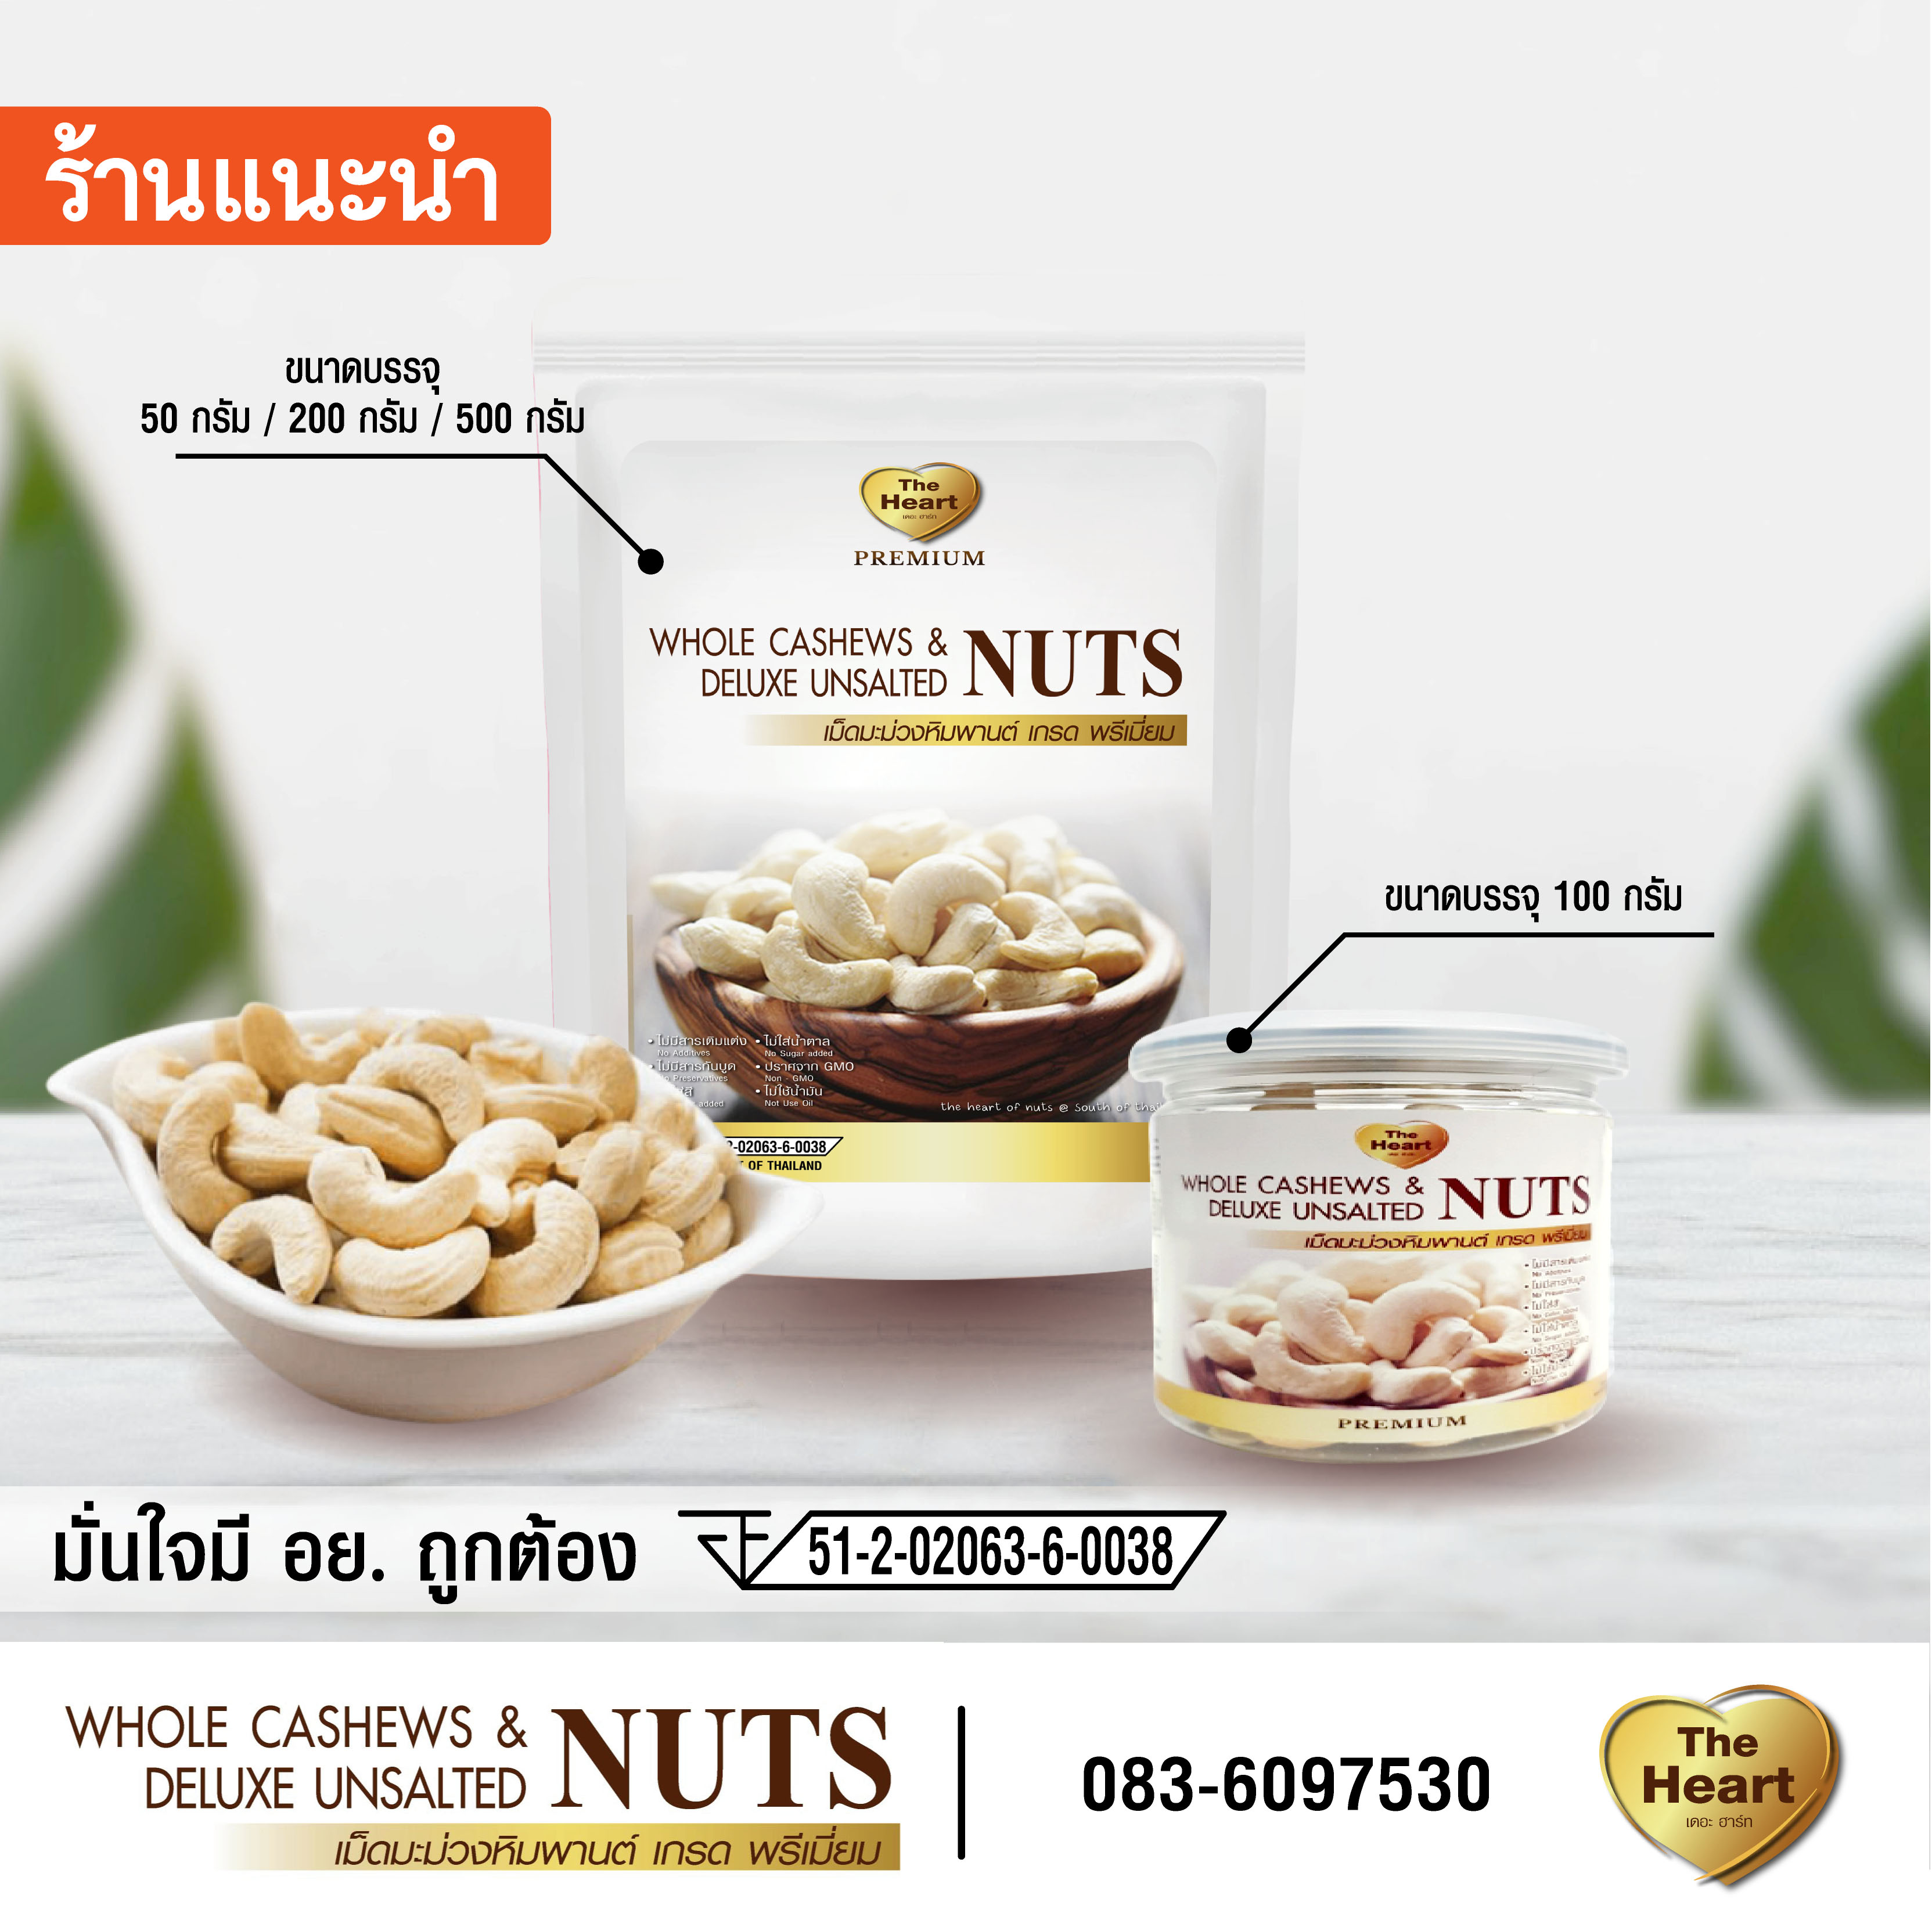 TheHeart Superfood Premium Cashew Nuts เม็ดมะม่วง หิมพานต์ อบธรรมชาติ ไม่ทอด คีโต จัมโบ้ เกรดพรีเมี่ยม ถั่ว ธัญพืช